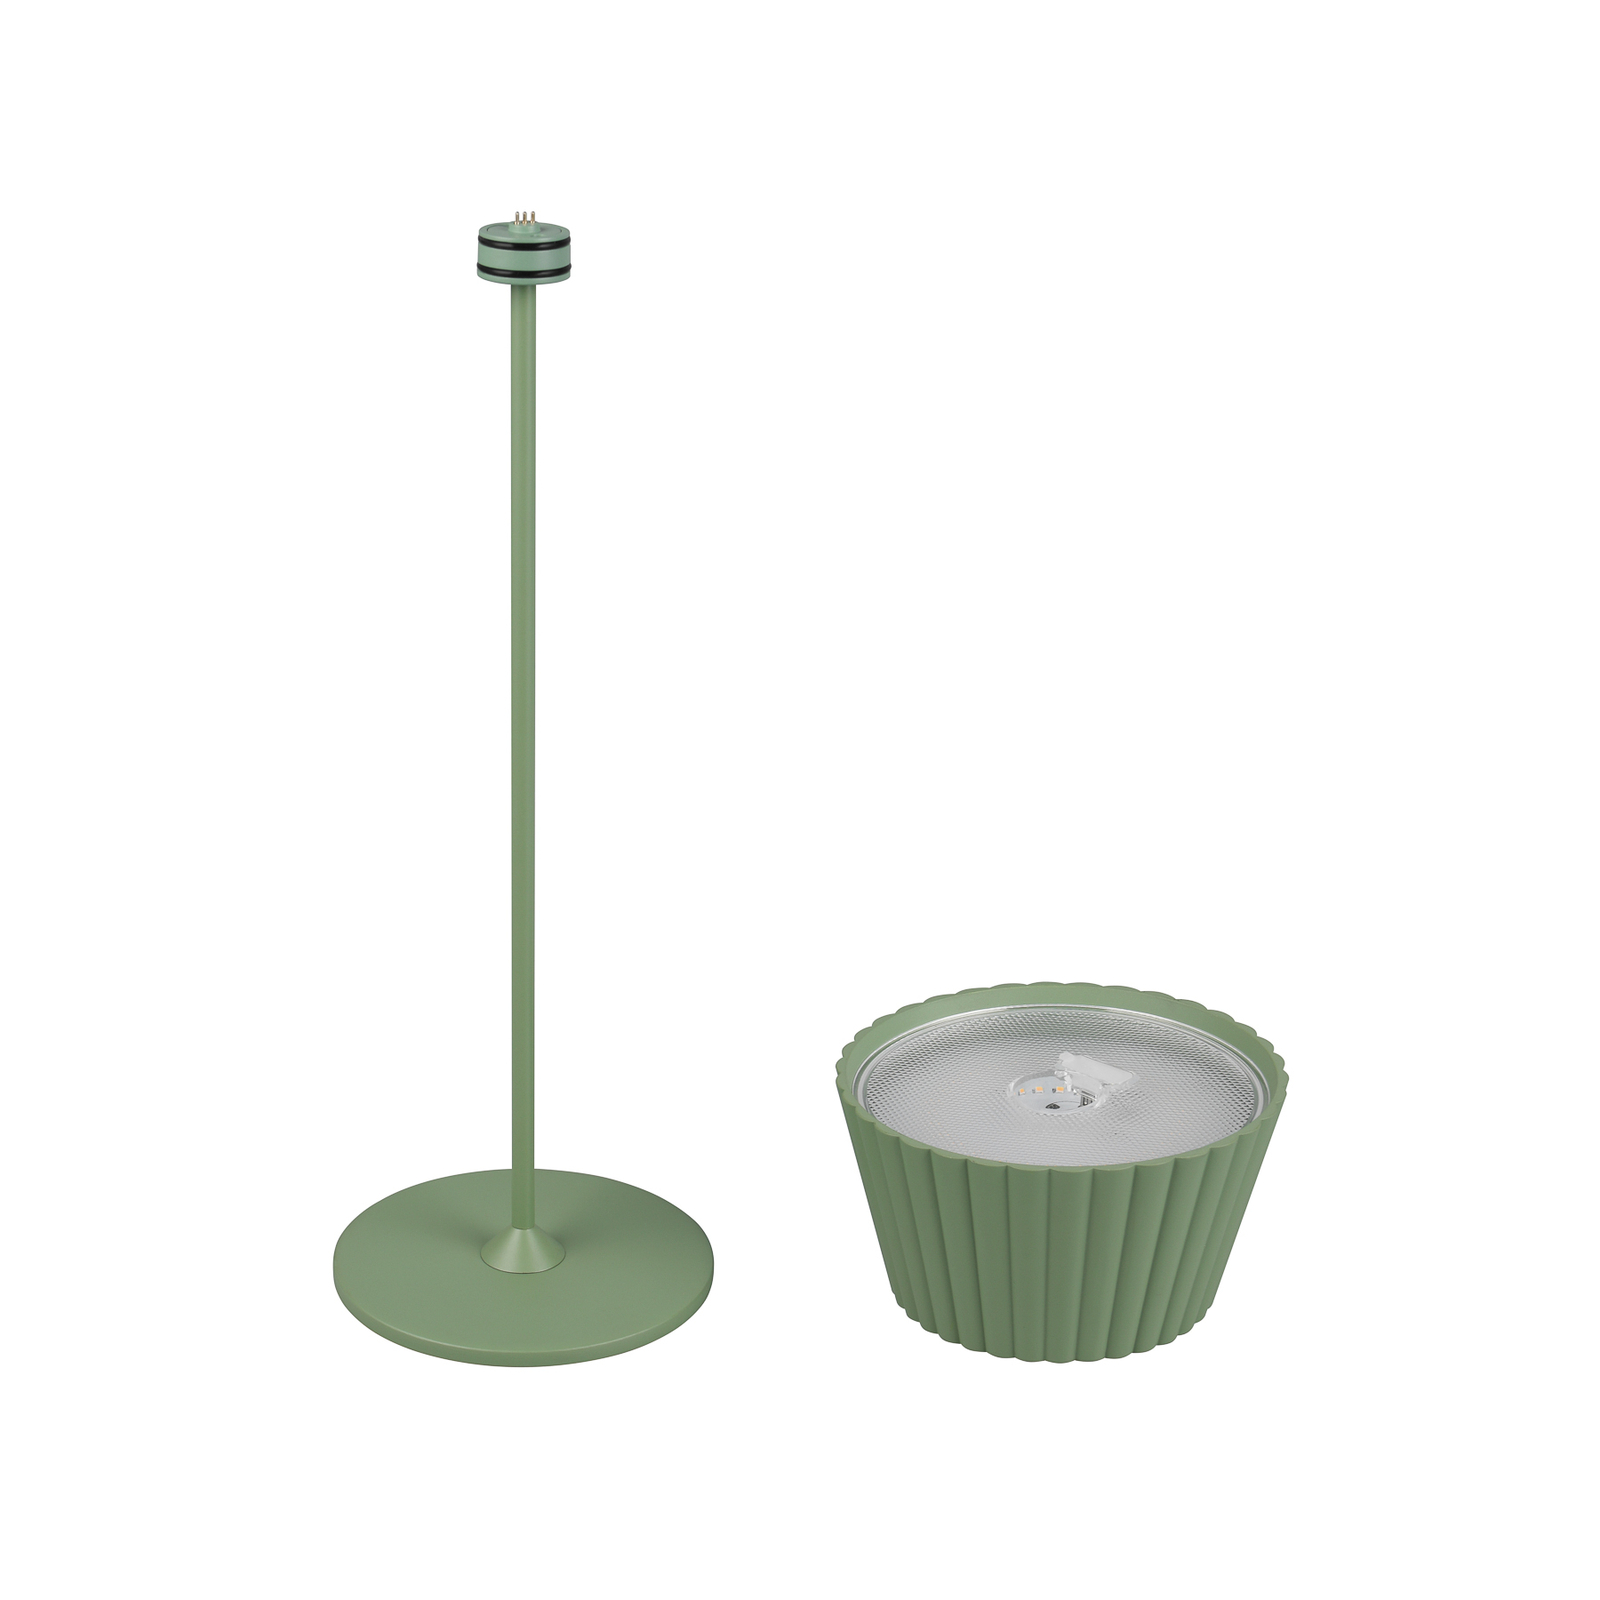 Suarez LED oppladbar bordlampe, grønn, høyde 39 cm, metall